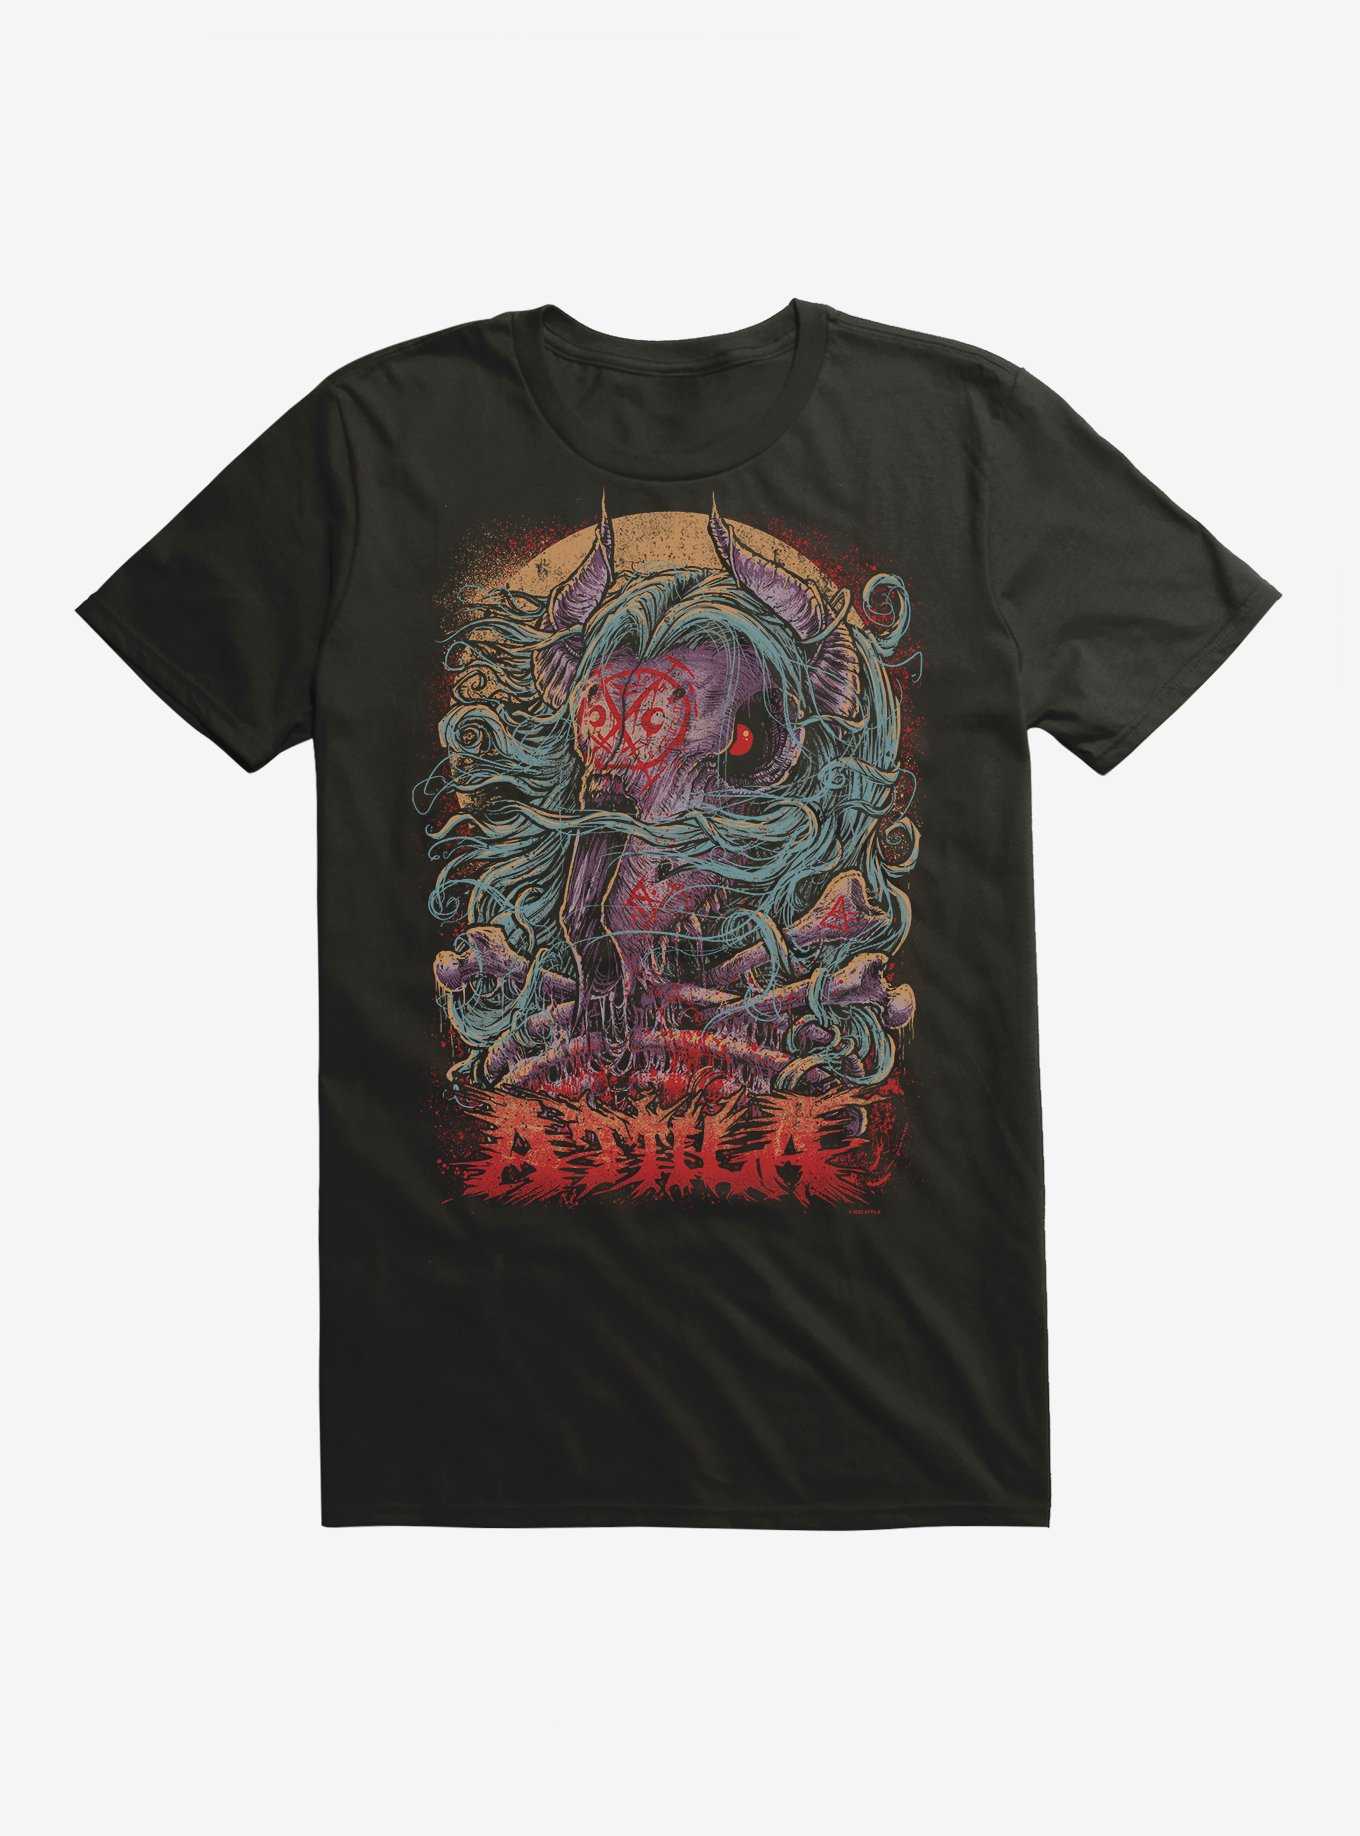 Attila Goat Skull & Bones T-Shirt, , hi-res